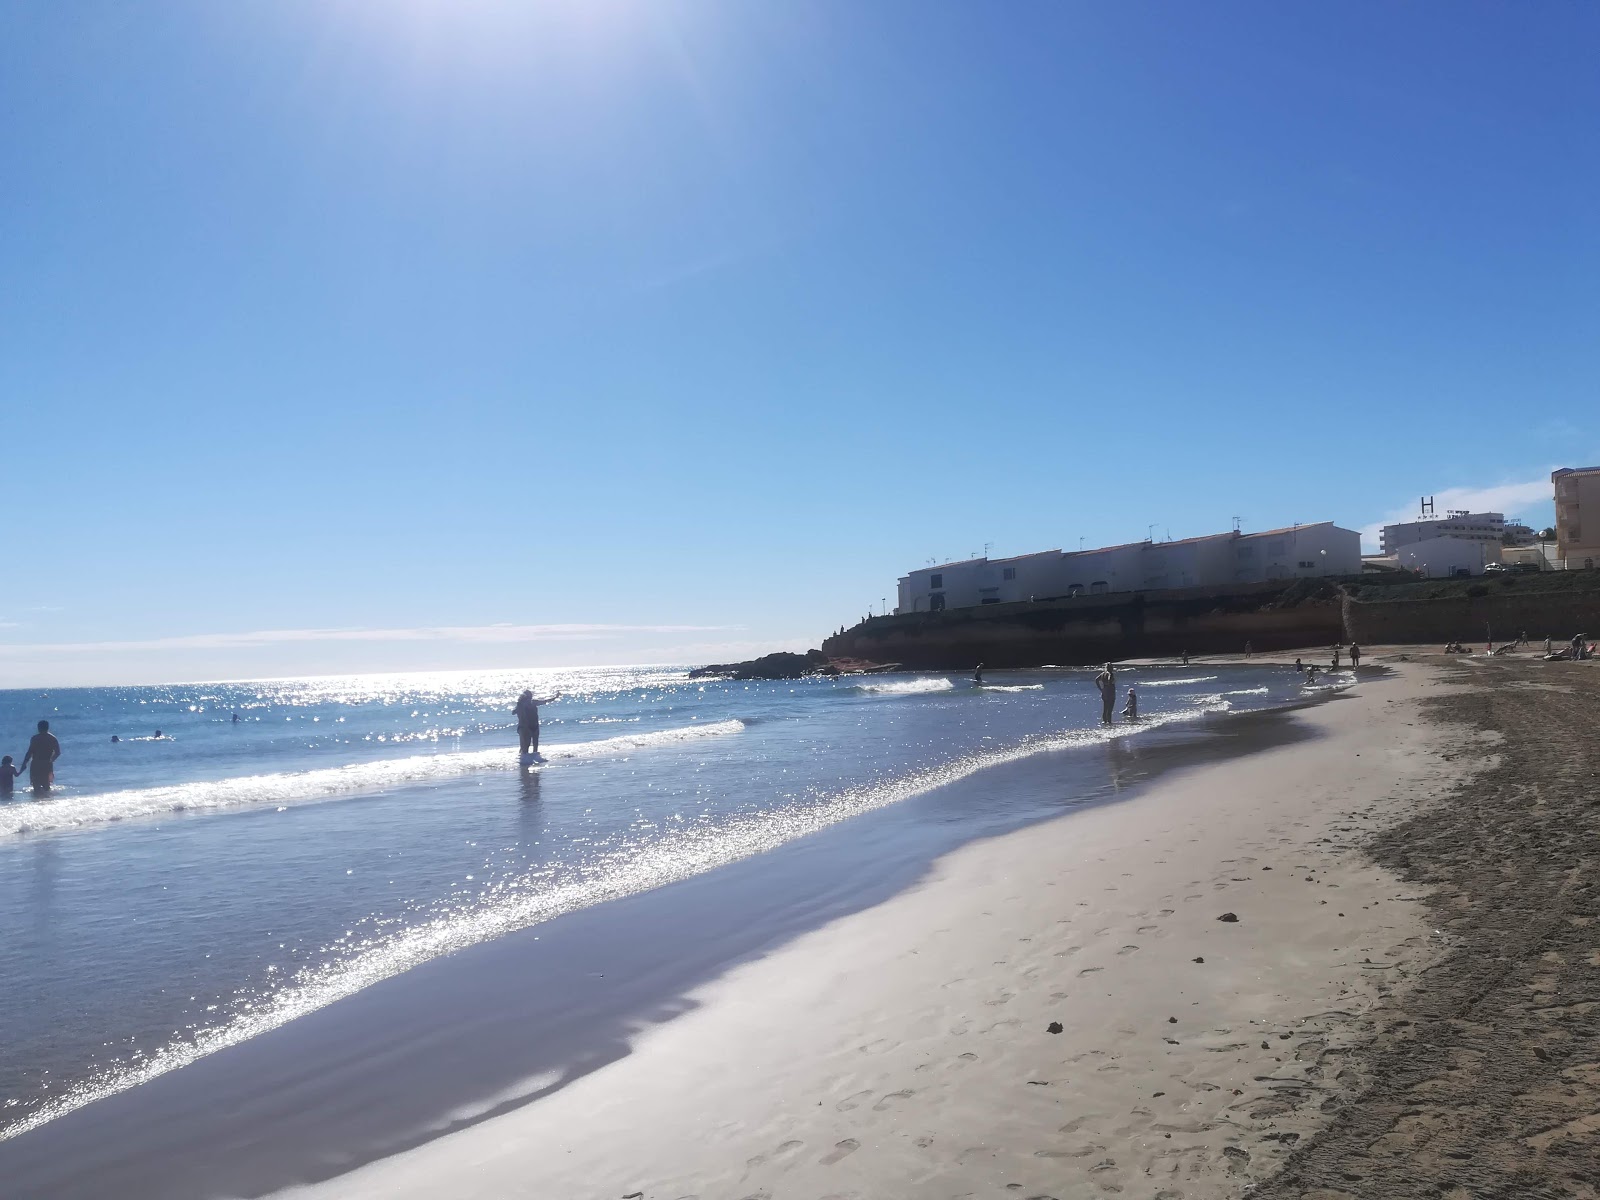 弗拉门卡海滩的照片 具有非常干净级别的清洁度